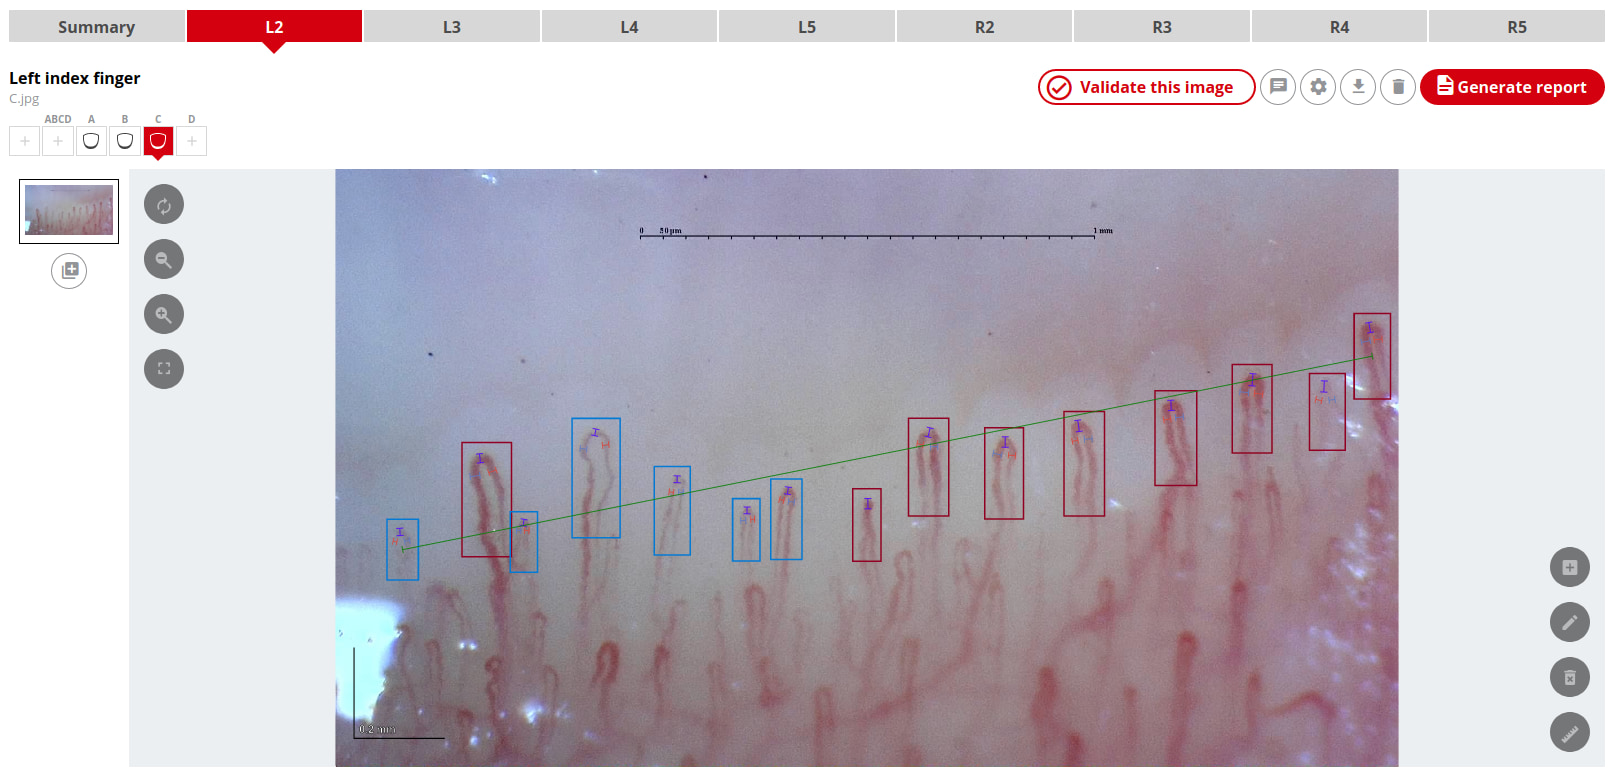 Esempio di capillaroscopia caricata su Capillary.io per essere analizzata